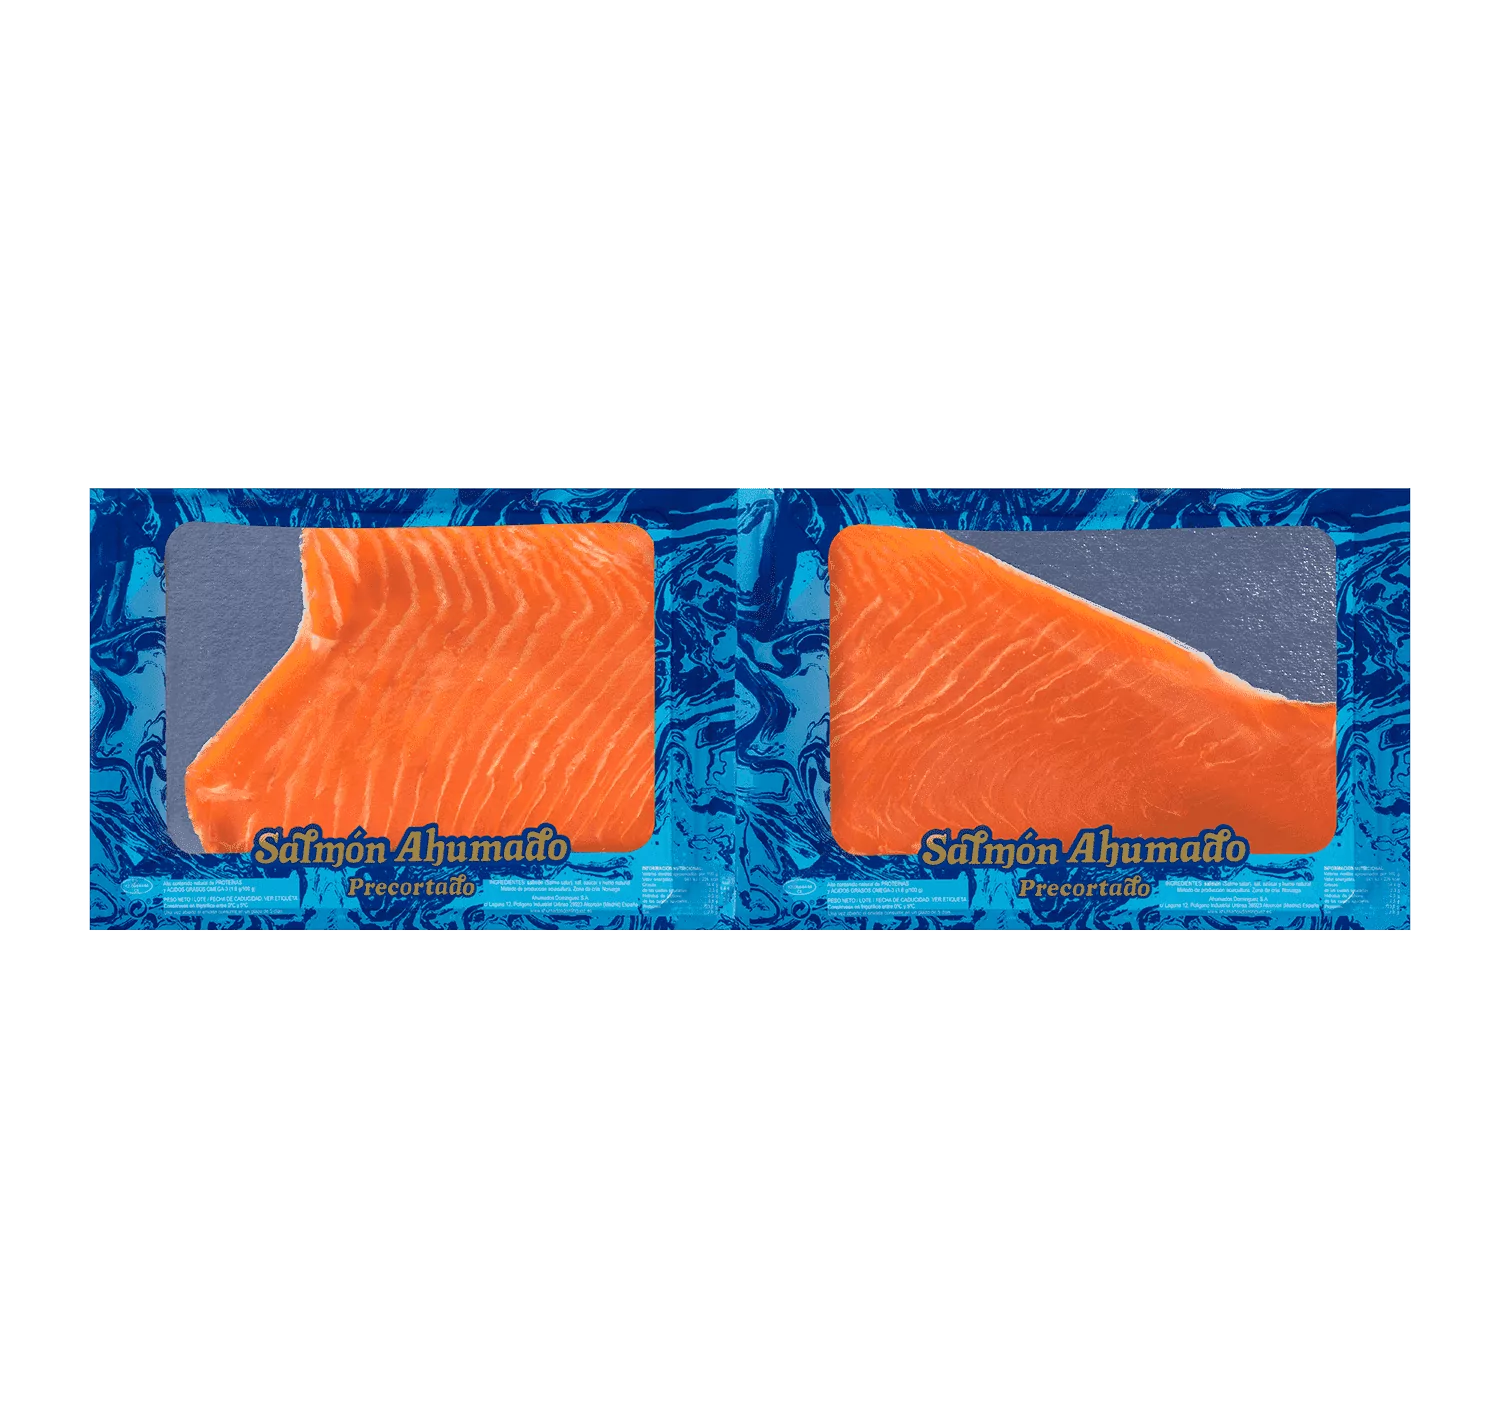 Salmon Ahumado precortado en dos piezas